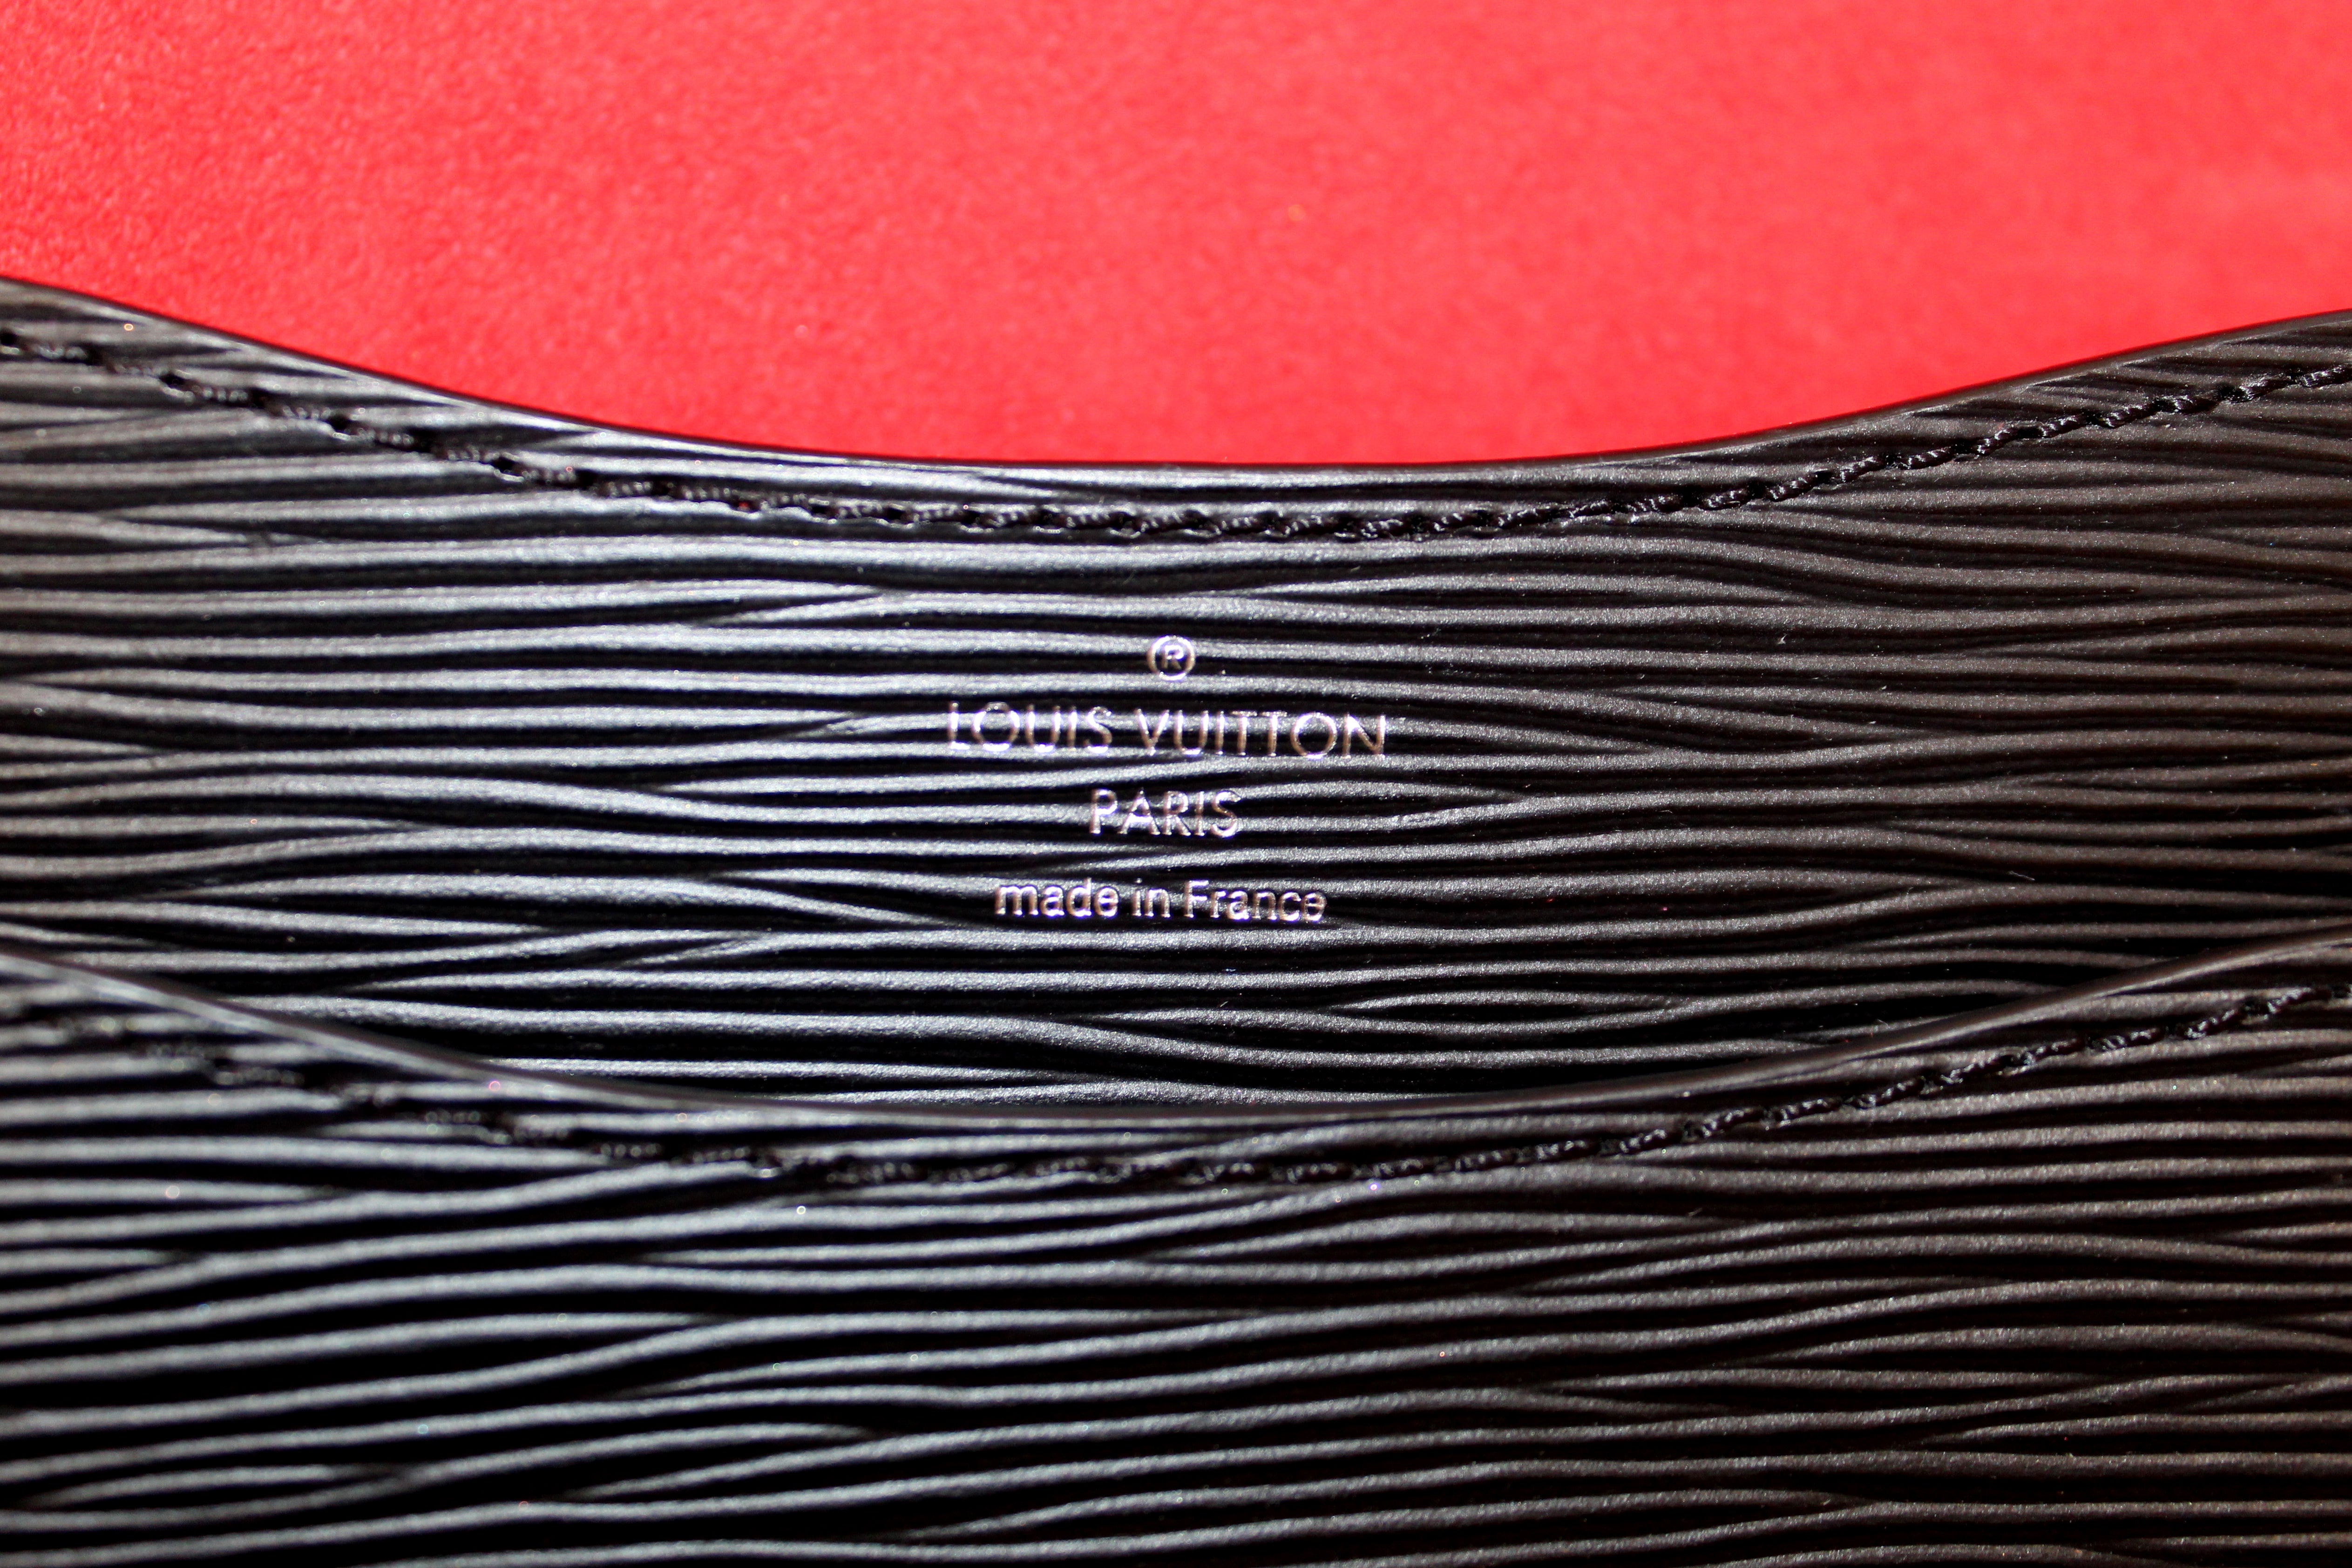 Louis Vuitton Messenger EPI Noir Neo Monceau Hand Shoulder 2 Way Bag Preowned